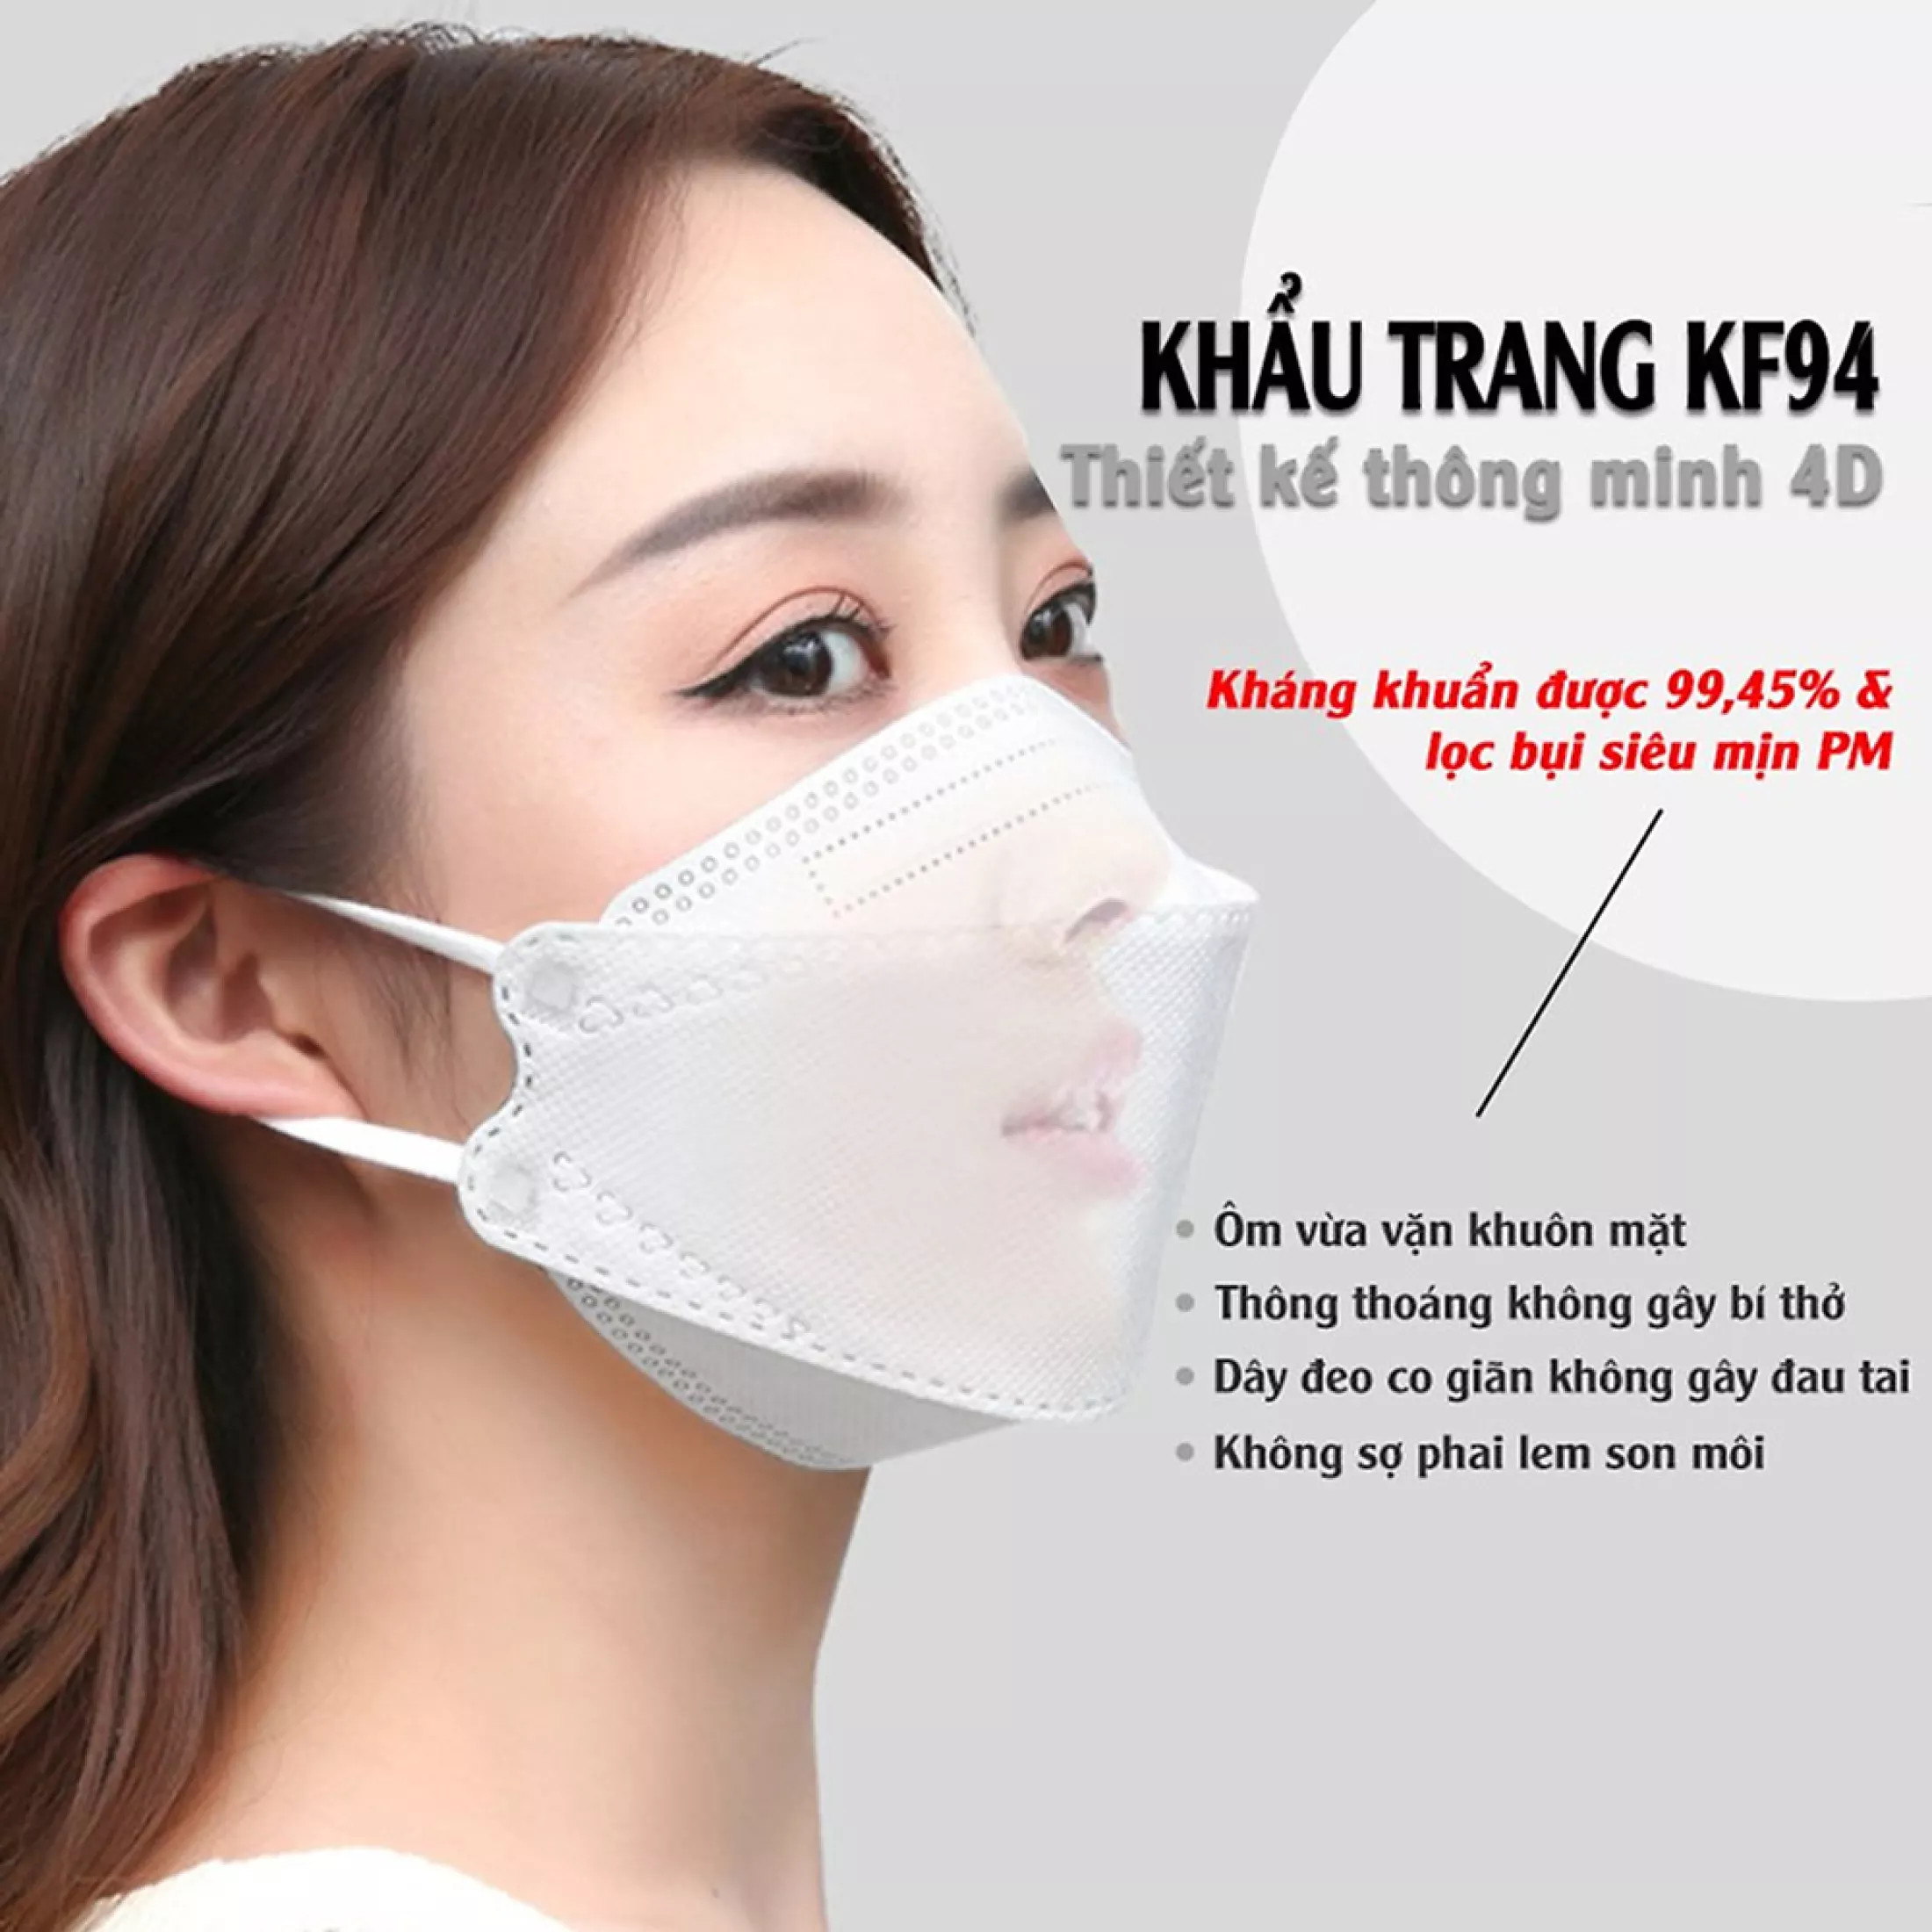 Giá sỉ 1 thùng 300 chiếc khẩu trang y tế 4D mask kf94 công nghệ Hàn Quốc 4 lớp vải kháng khuẩn, kháng bụi mịn lên đến 95%, đạt tiêu chuẩn ISO